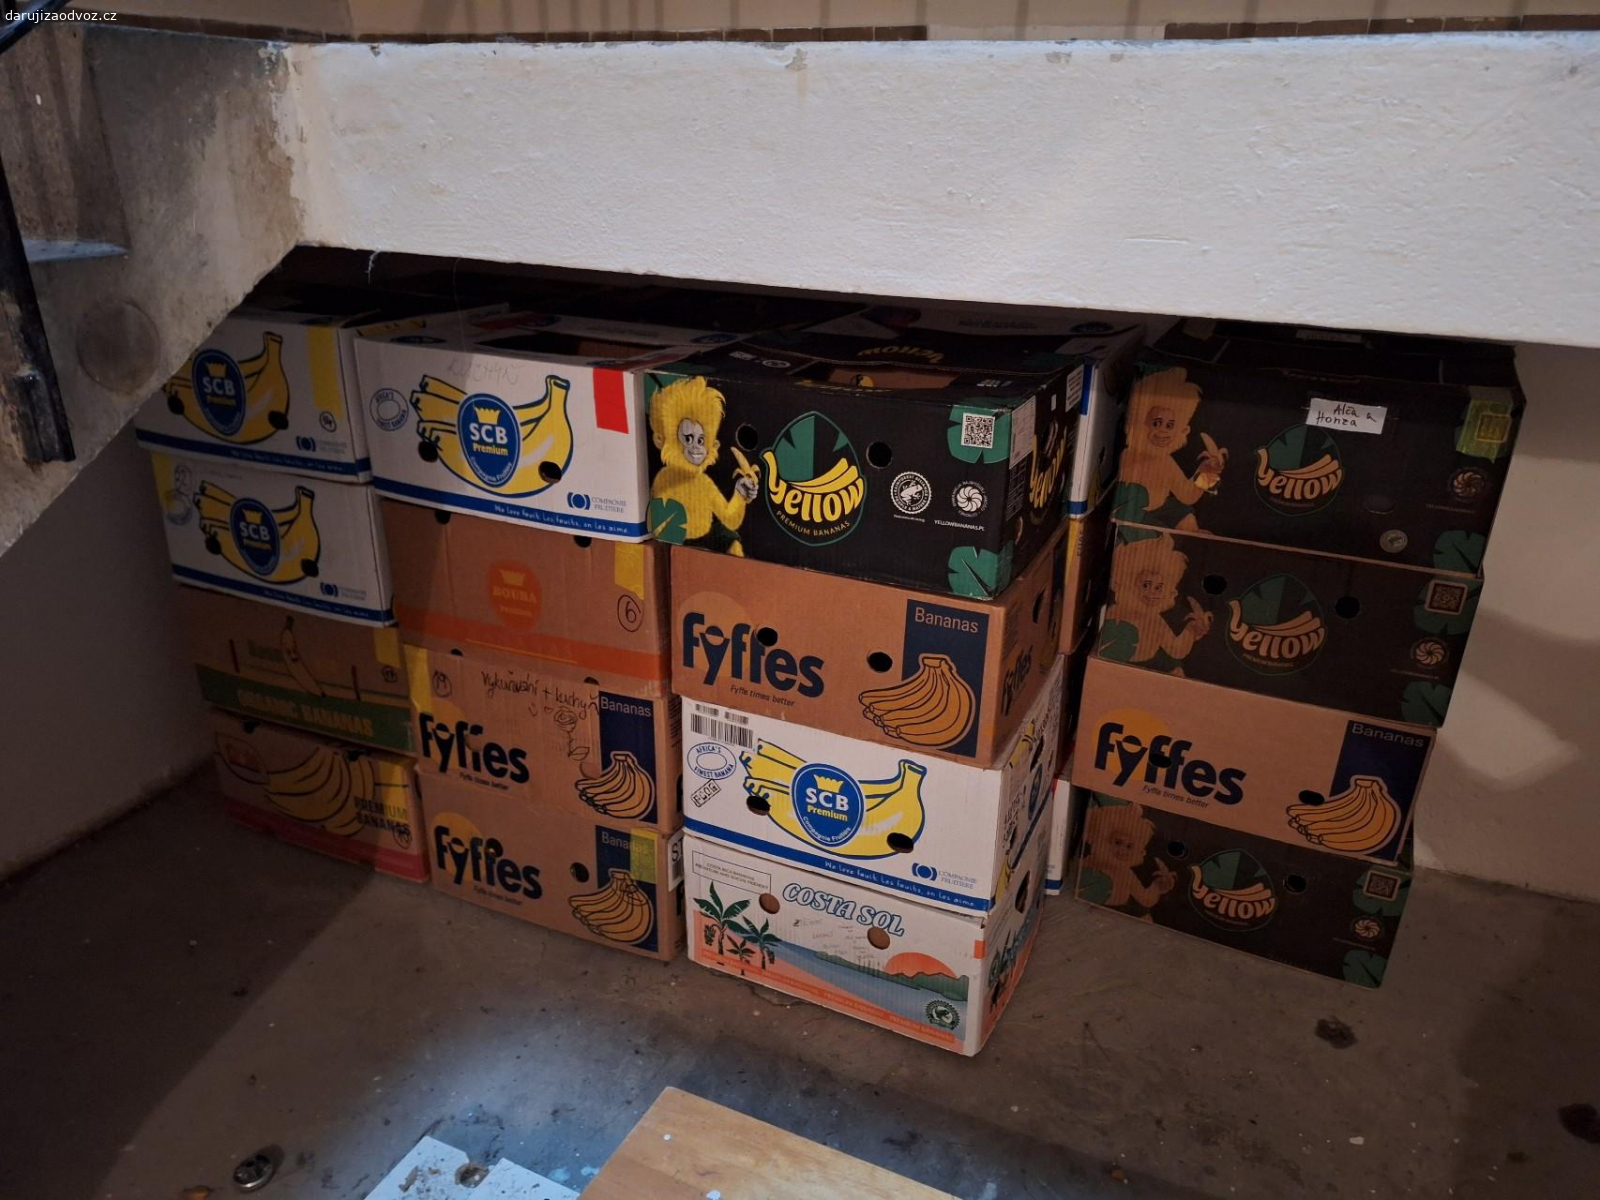 Banánové krabice. Dobrý den, daruji banánové krabice za odvoz. 28ks. Zůstalo po stěhování.